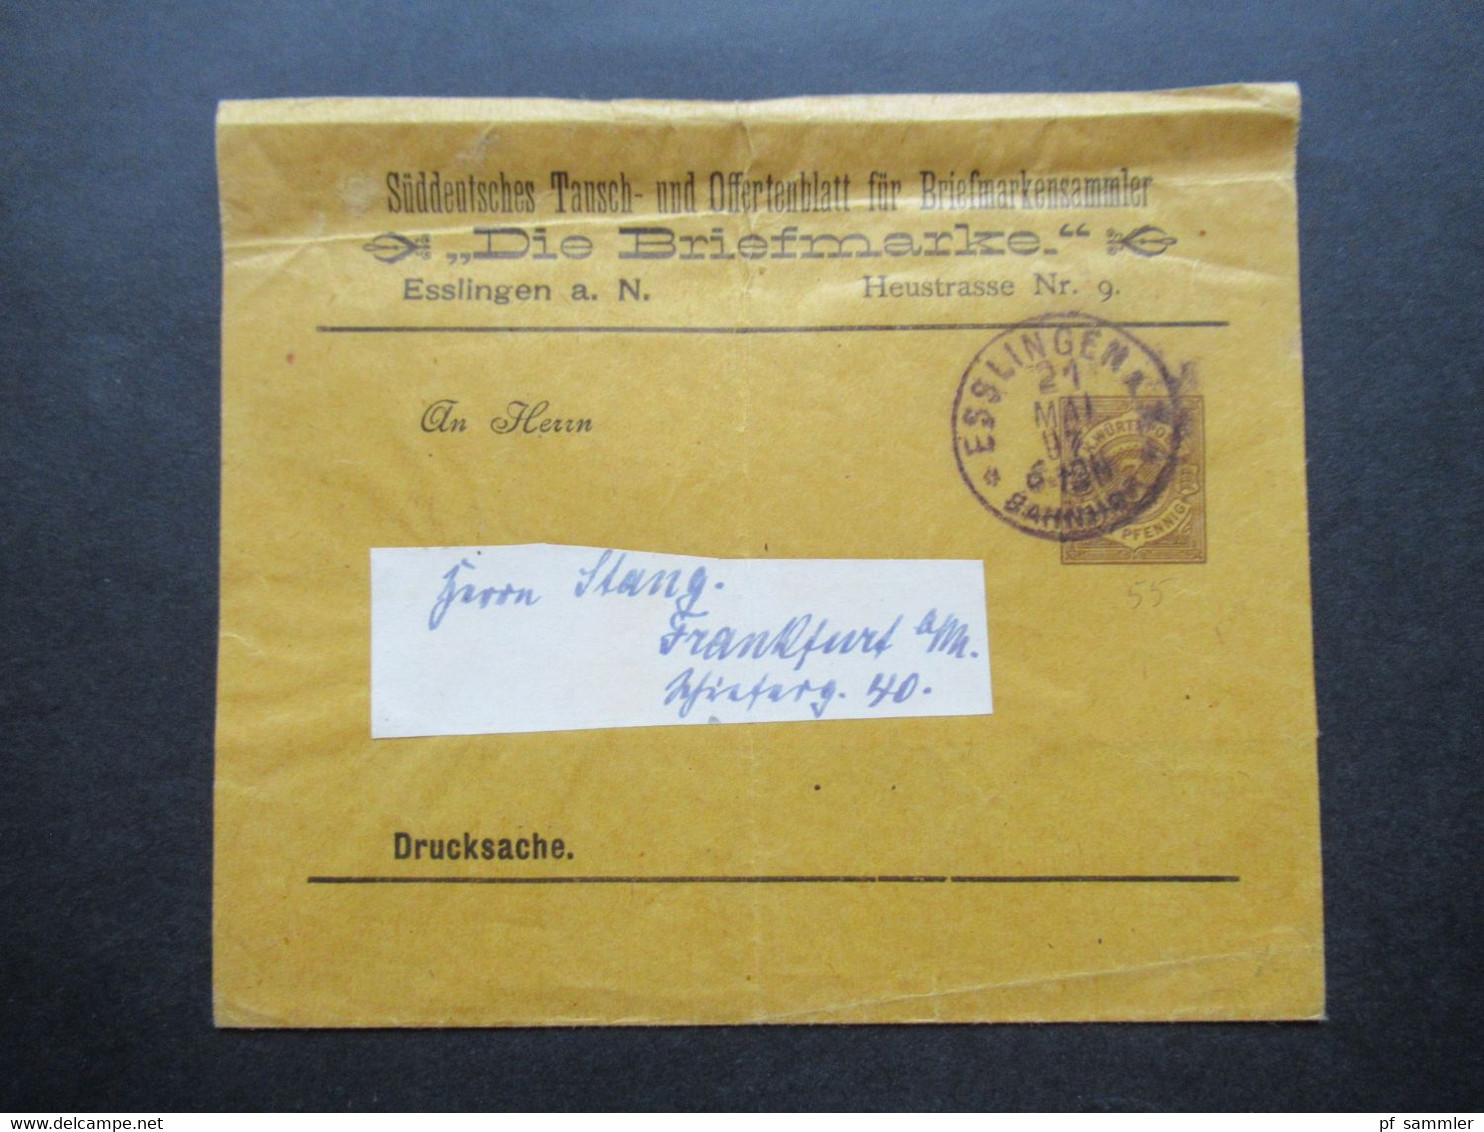 Württemberg 1897 PP Privatganzsache Streifband Süddeutsches Tausch U.Offertenblatt Für Briefmarkensammler Die Briefmarke - Postal  Stationery